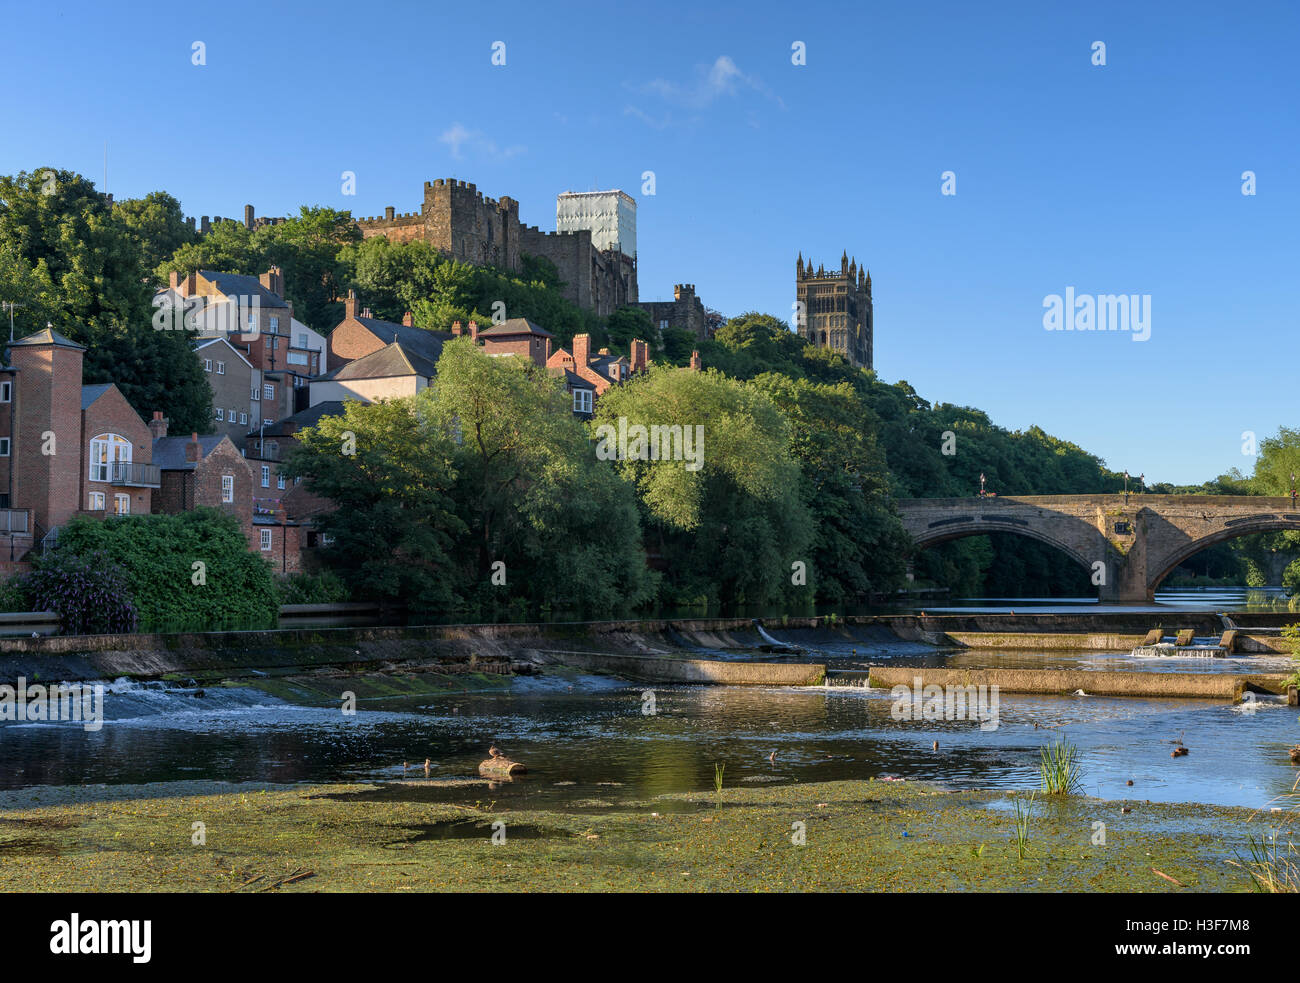 La ville de Durham, une ville historique de la rivière wear, Angleterre. Banque D'Images